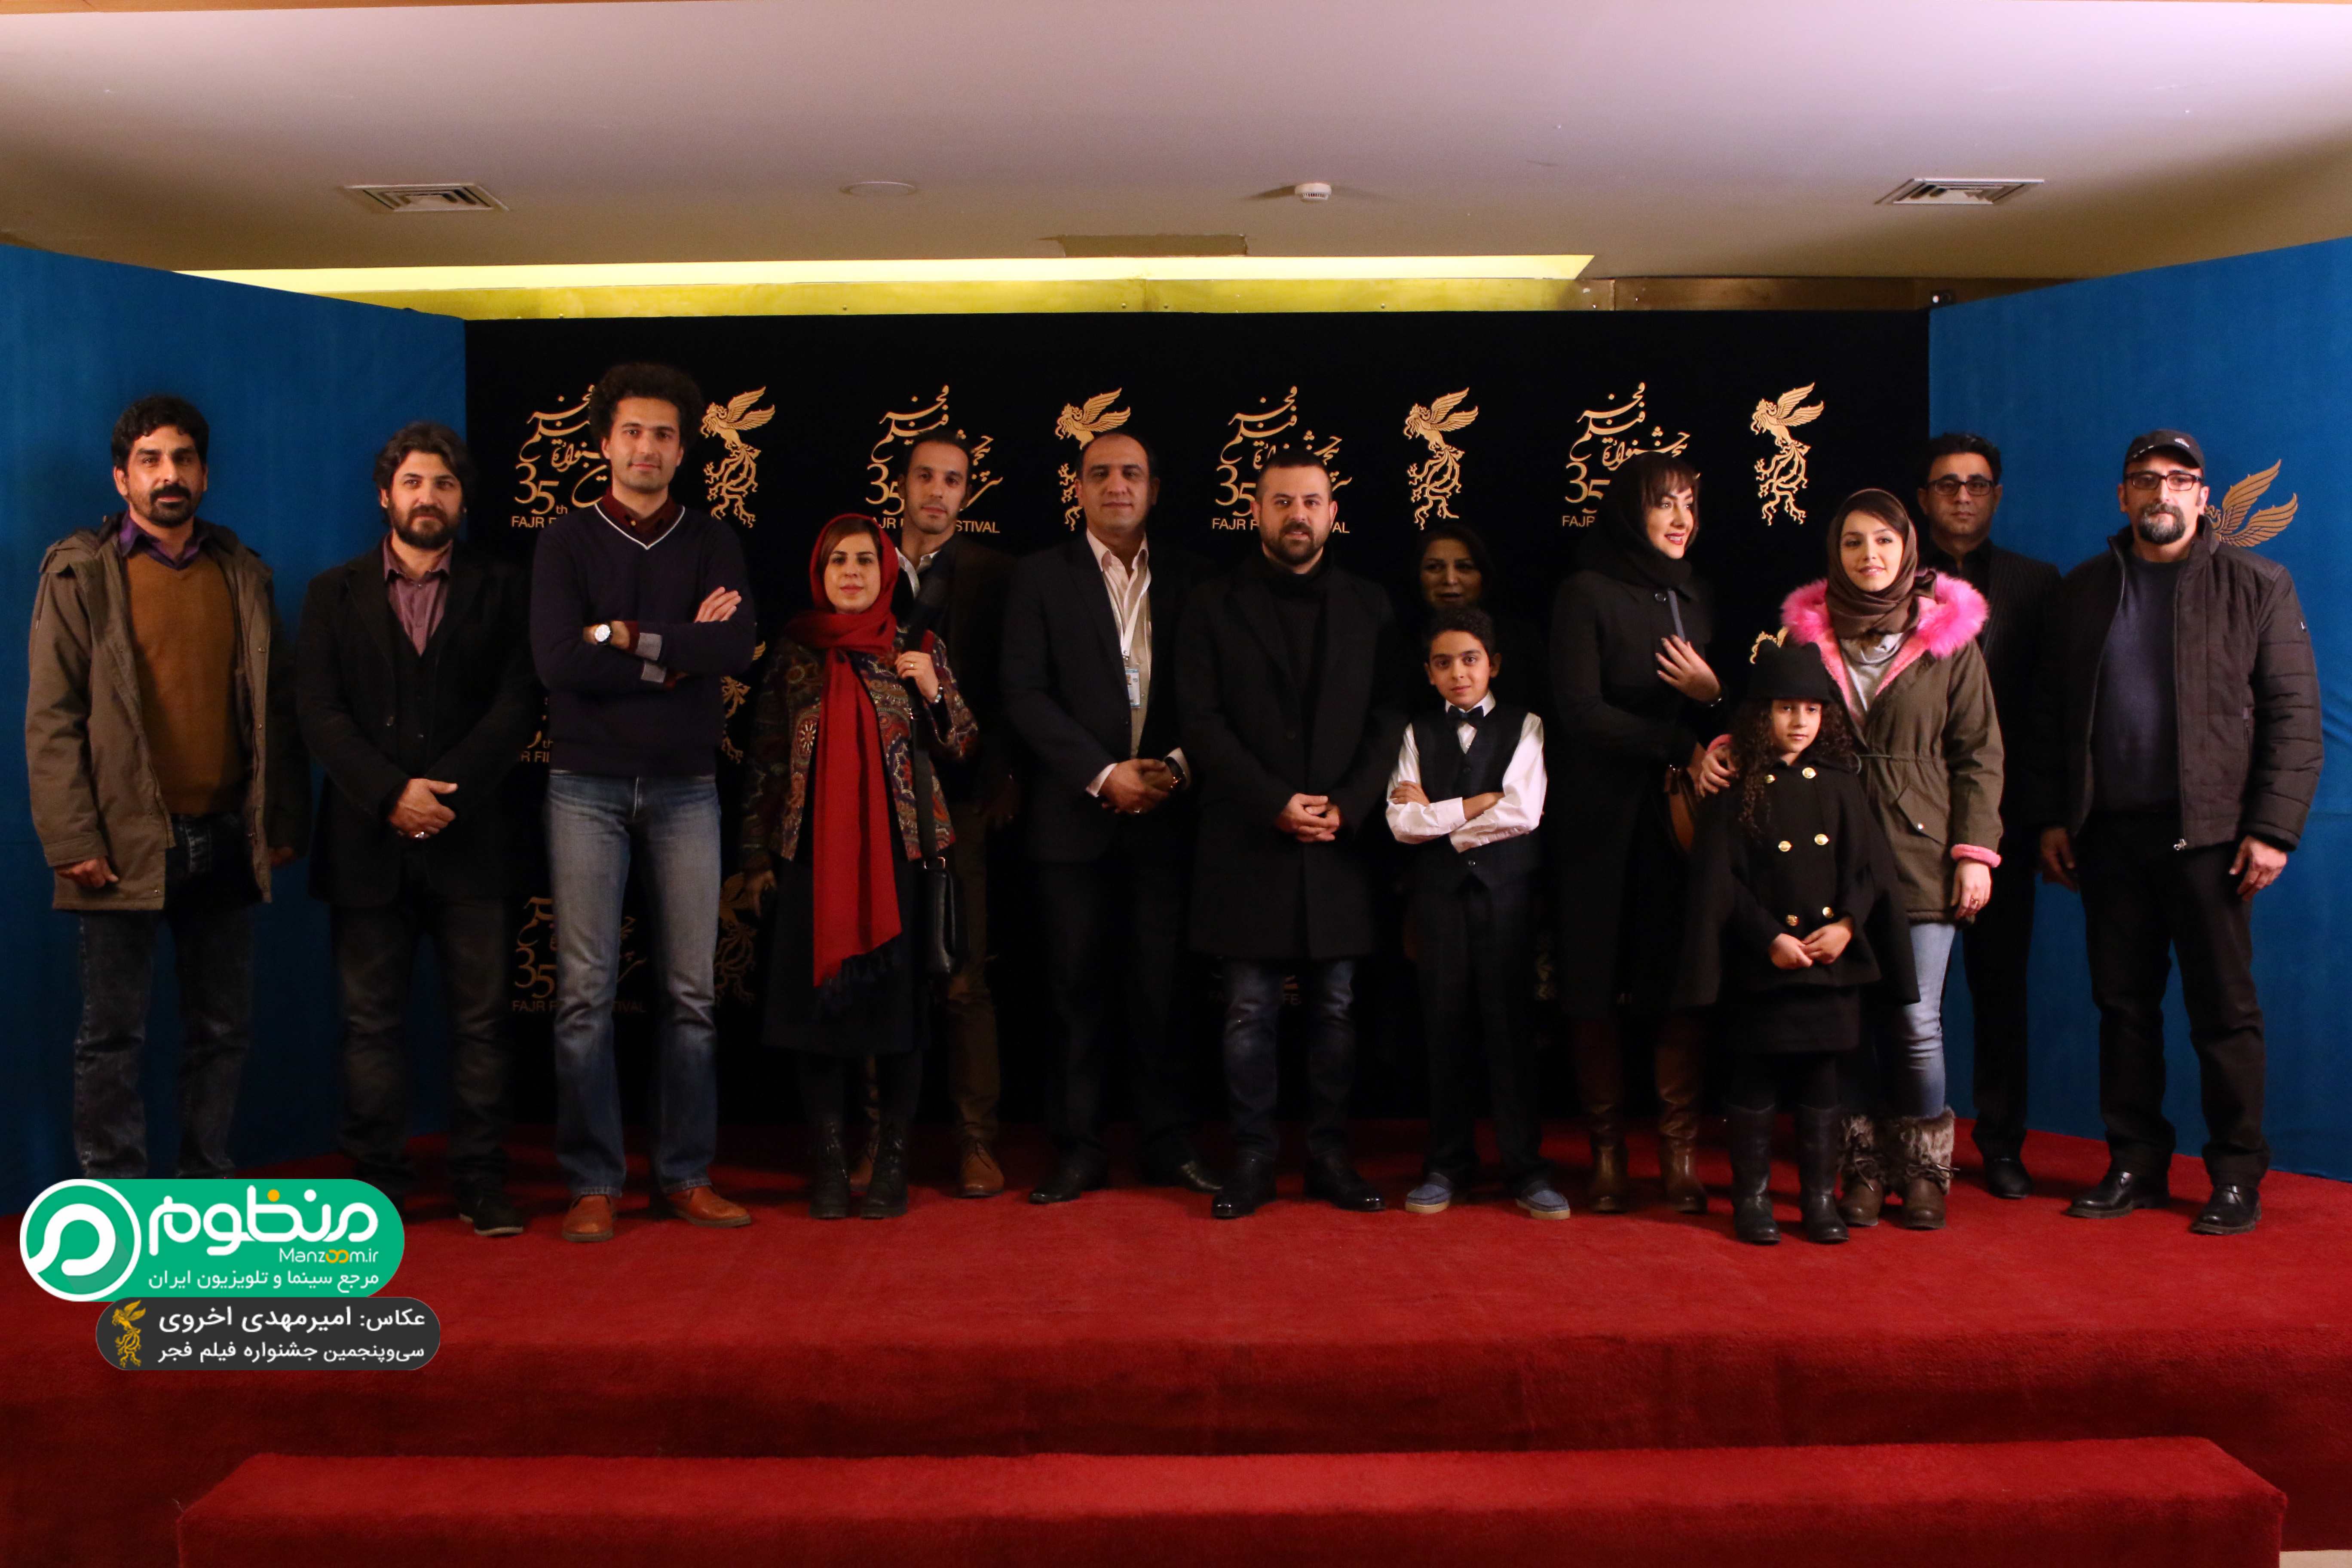 نازنین بیاتی در فرش قرمز فیلم سینمایی مادری به همراه آنا زارع، هانیه توسلی، سجاد اسماعیلی، هومن سیدی و رقیه توکلی